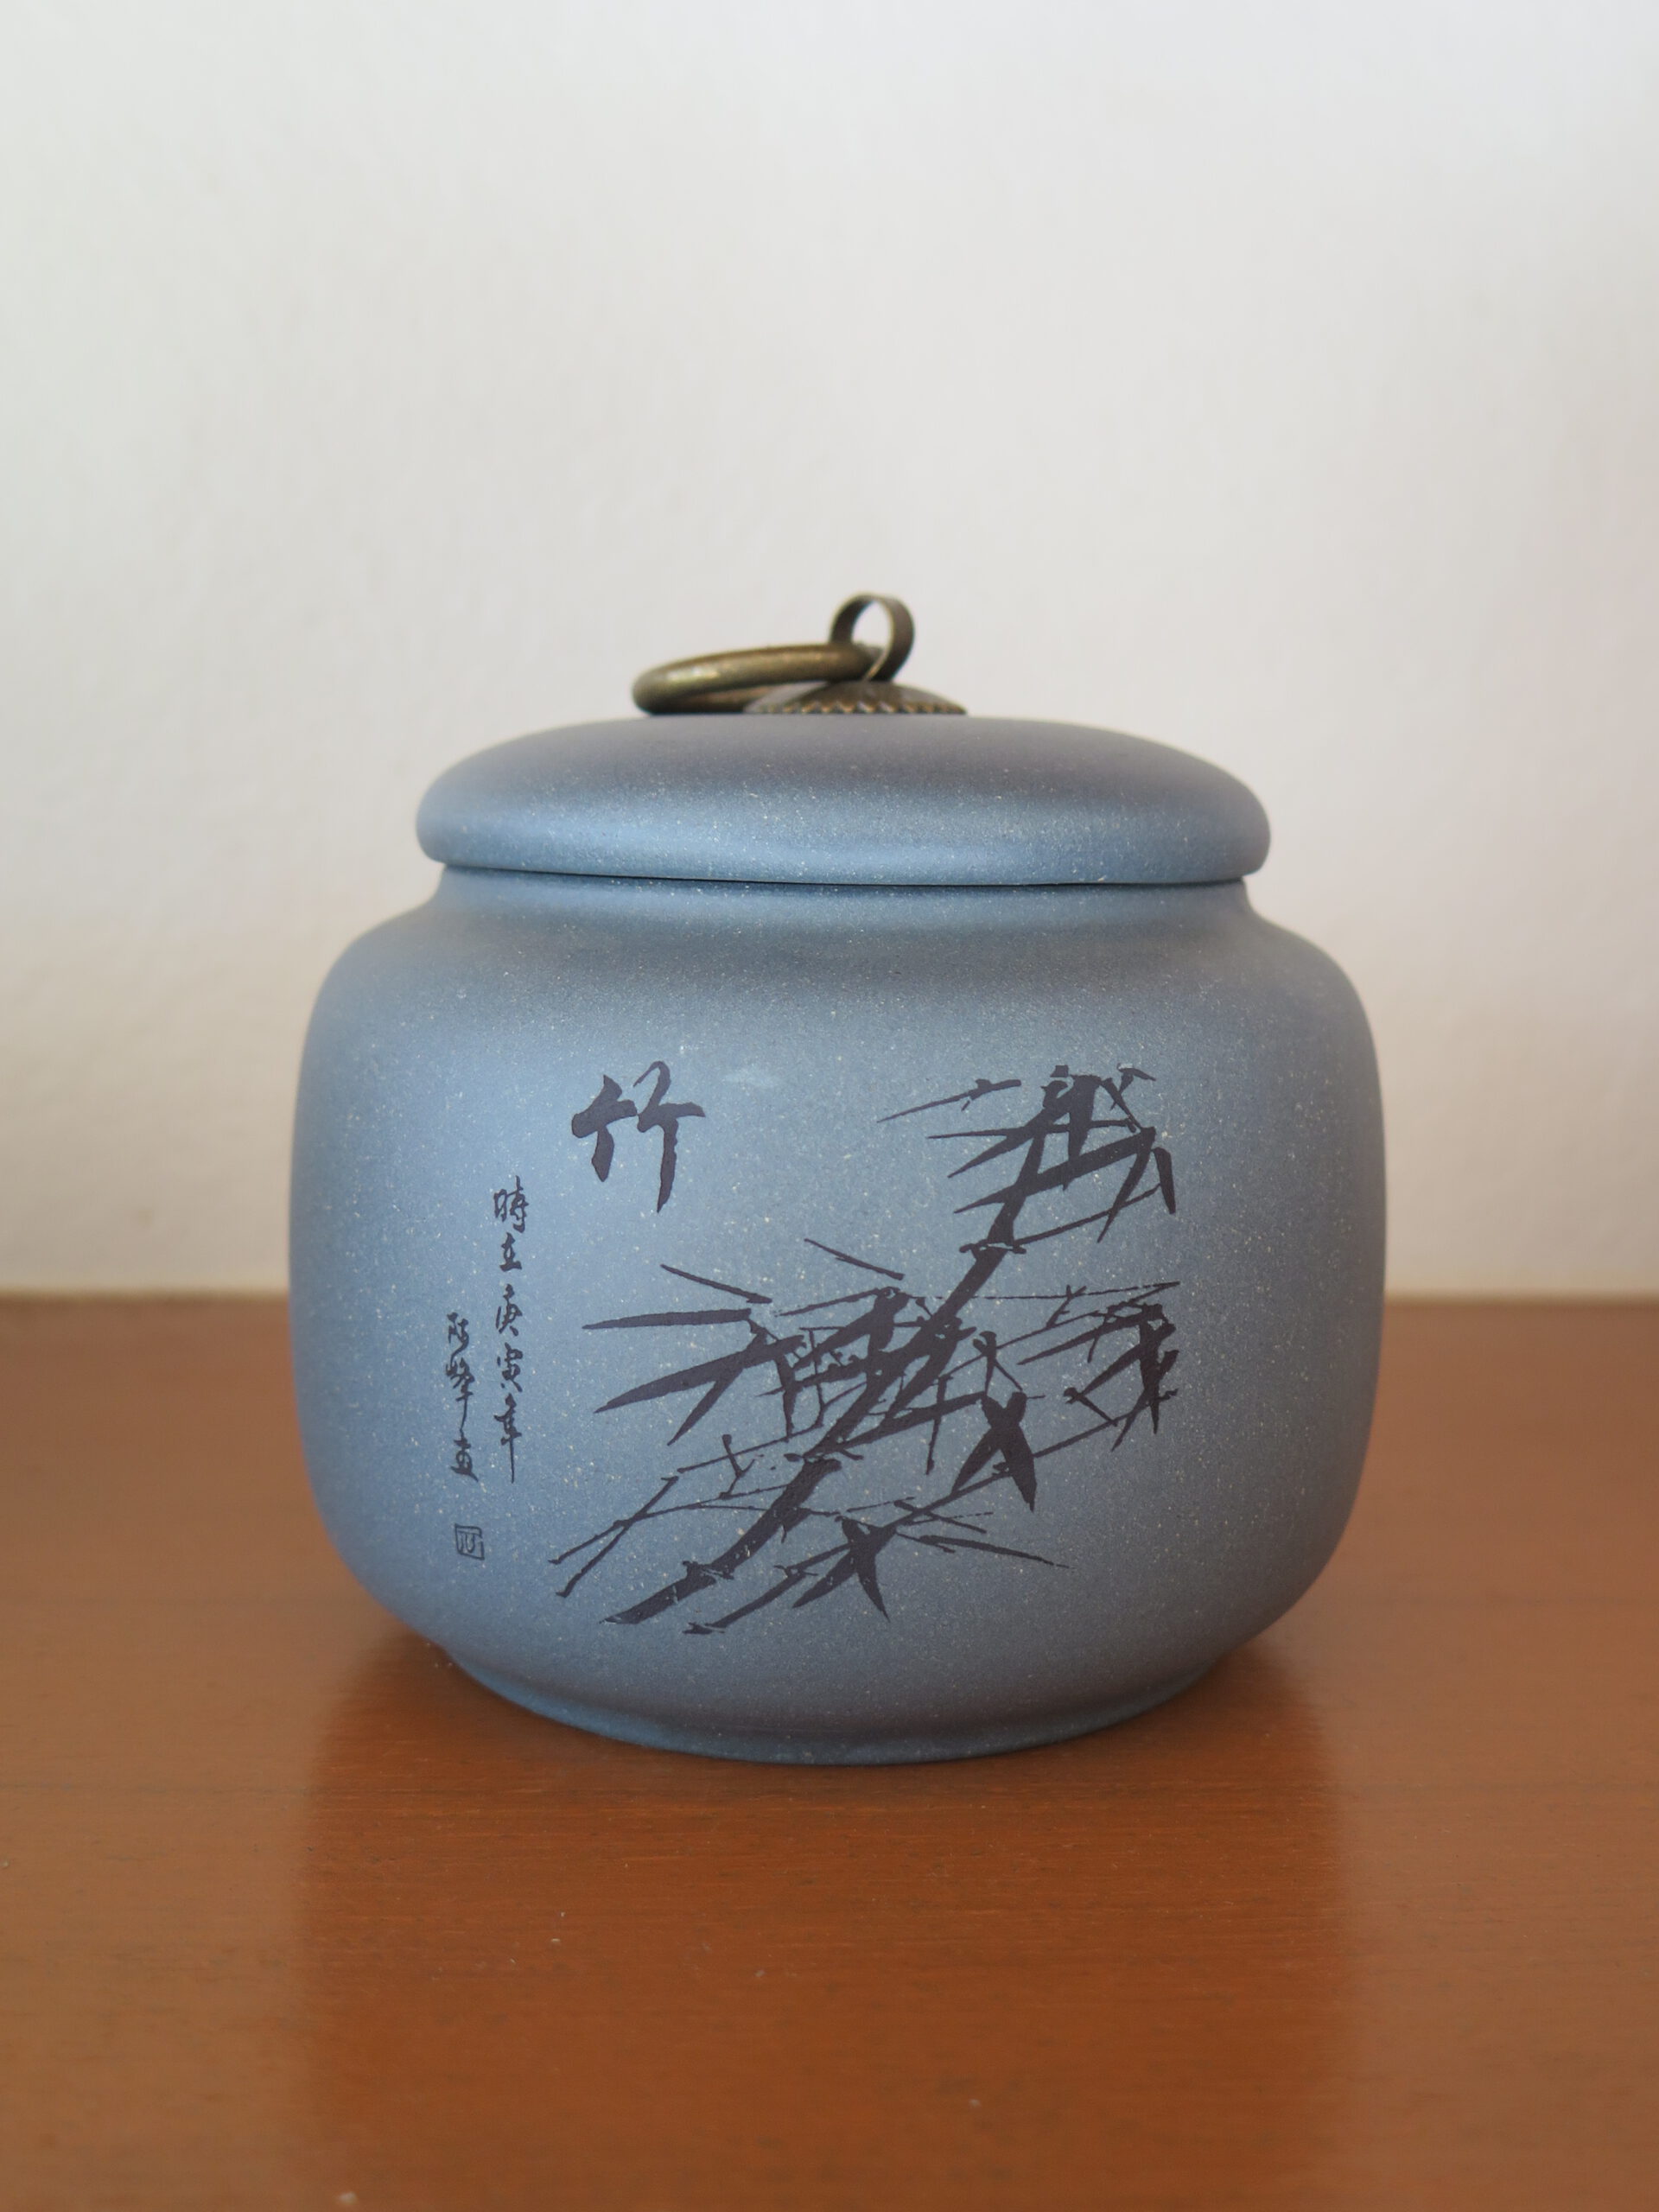 kyobashi tea - การ เก็บรักษาชา เก่า- ถ้ำชา สำหรับเก็บชาจีน